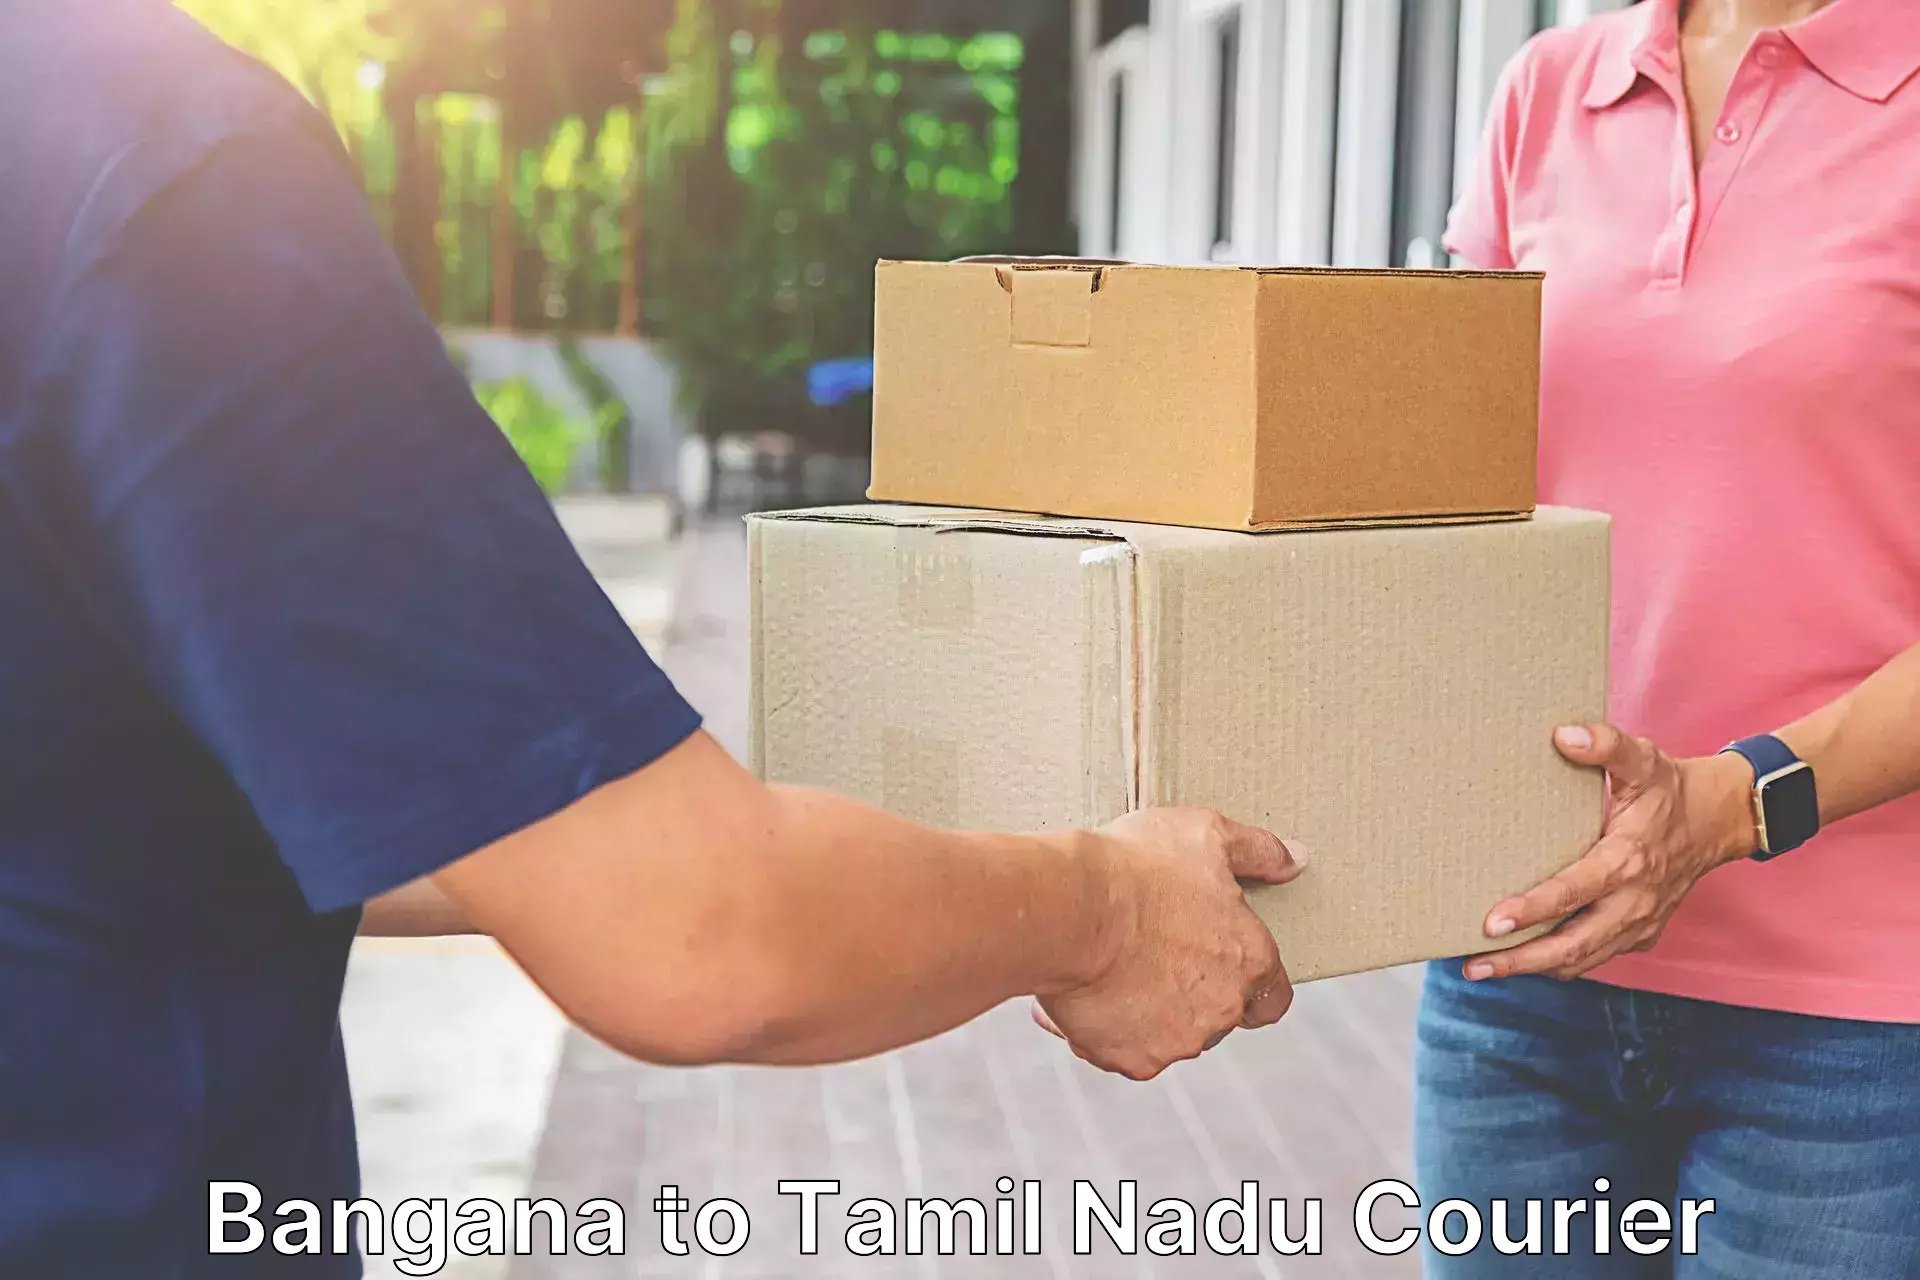 Fast shipping solutions Bangana to Tamil Nadu